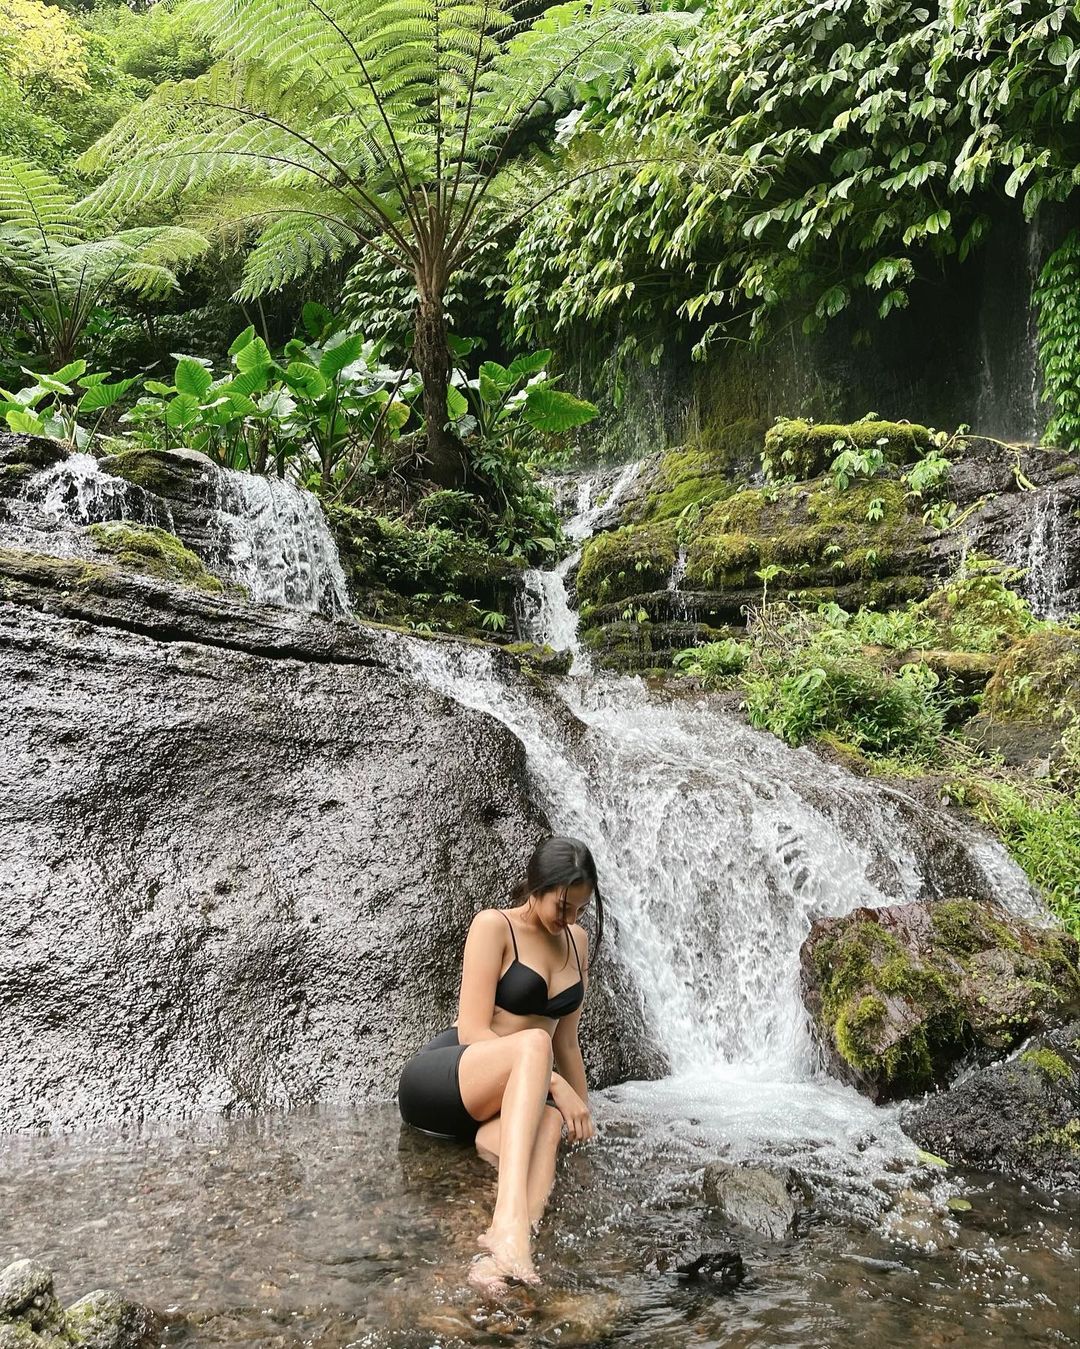 Banyumala Waterfall